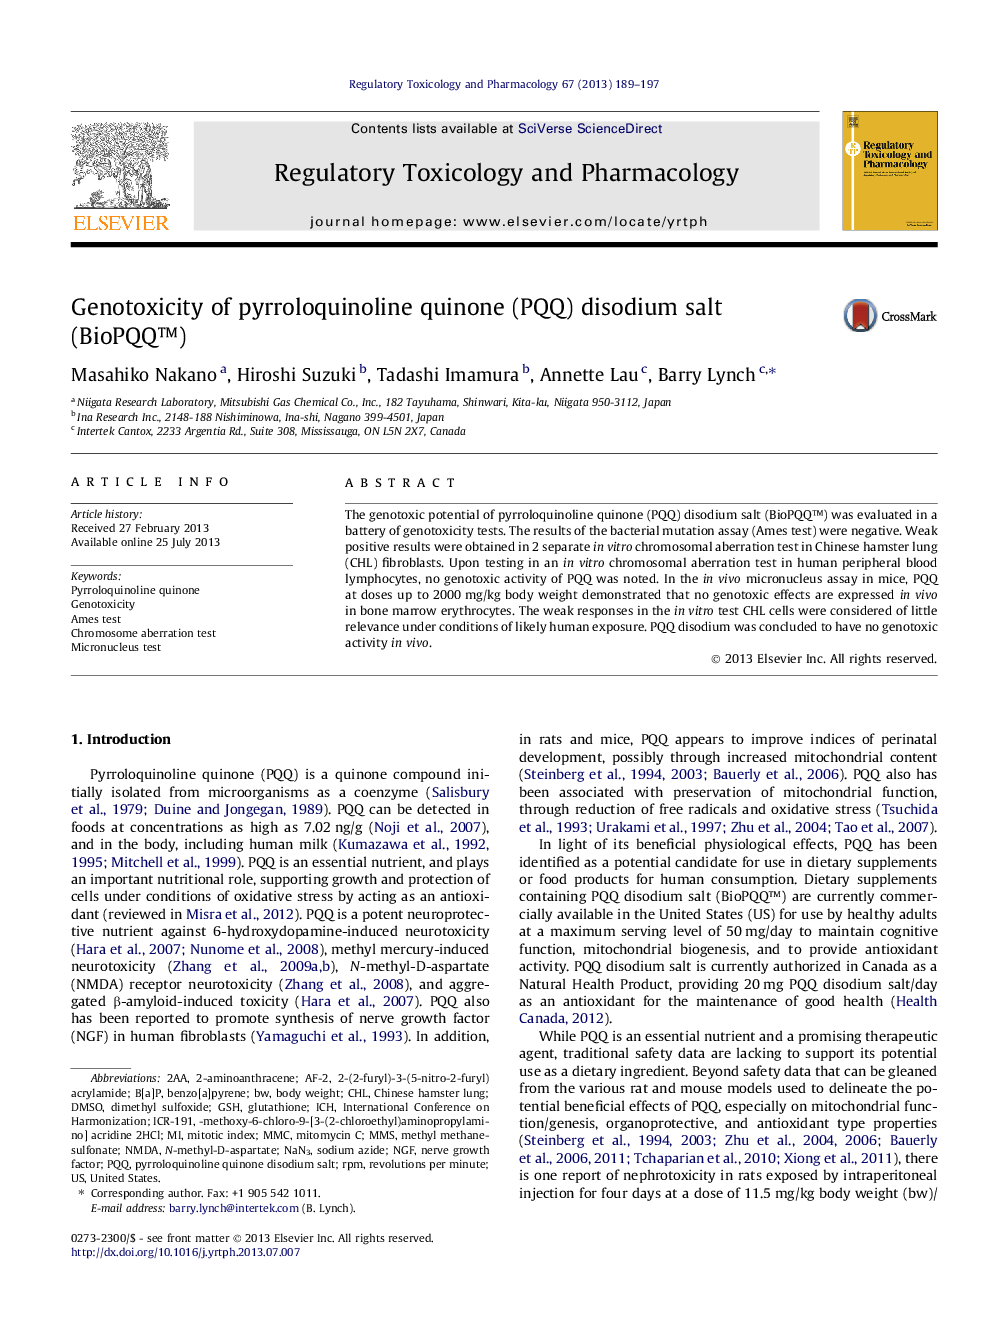 Genotoxicity of pyrroloquinoline quinone (PQQ) disodium salt (BioPQQâ¢)